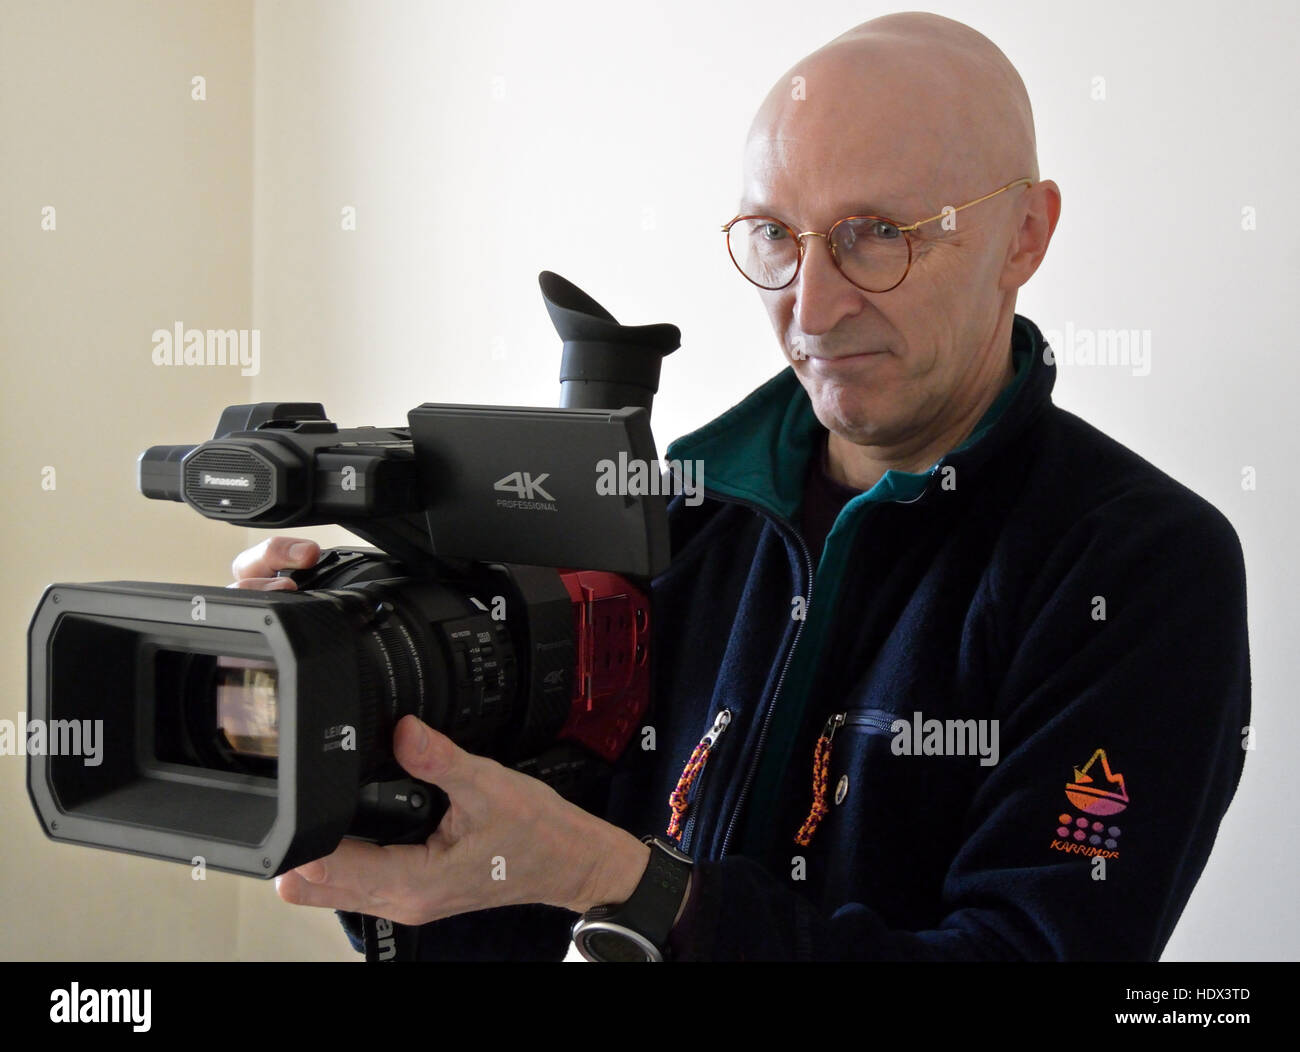 Clive Tully FRGS halten professionelle Videokamera Panasonic AG-DVX200 Stockfoto